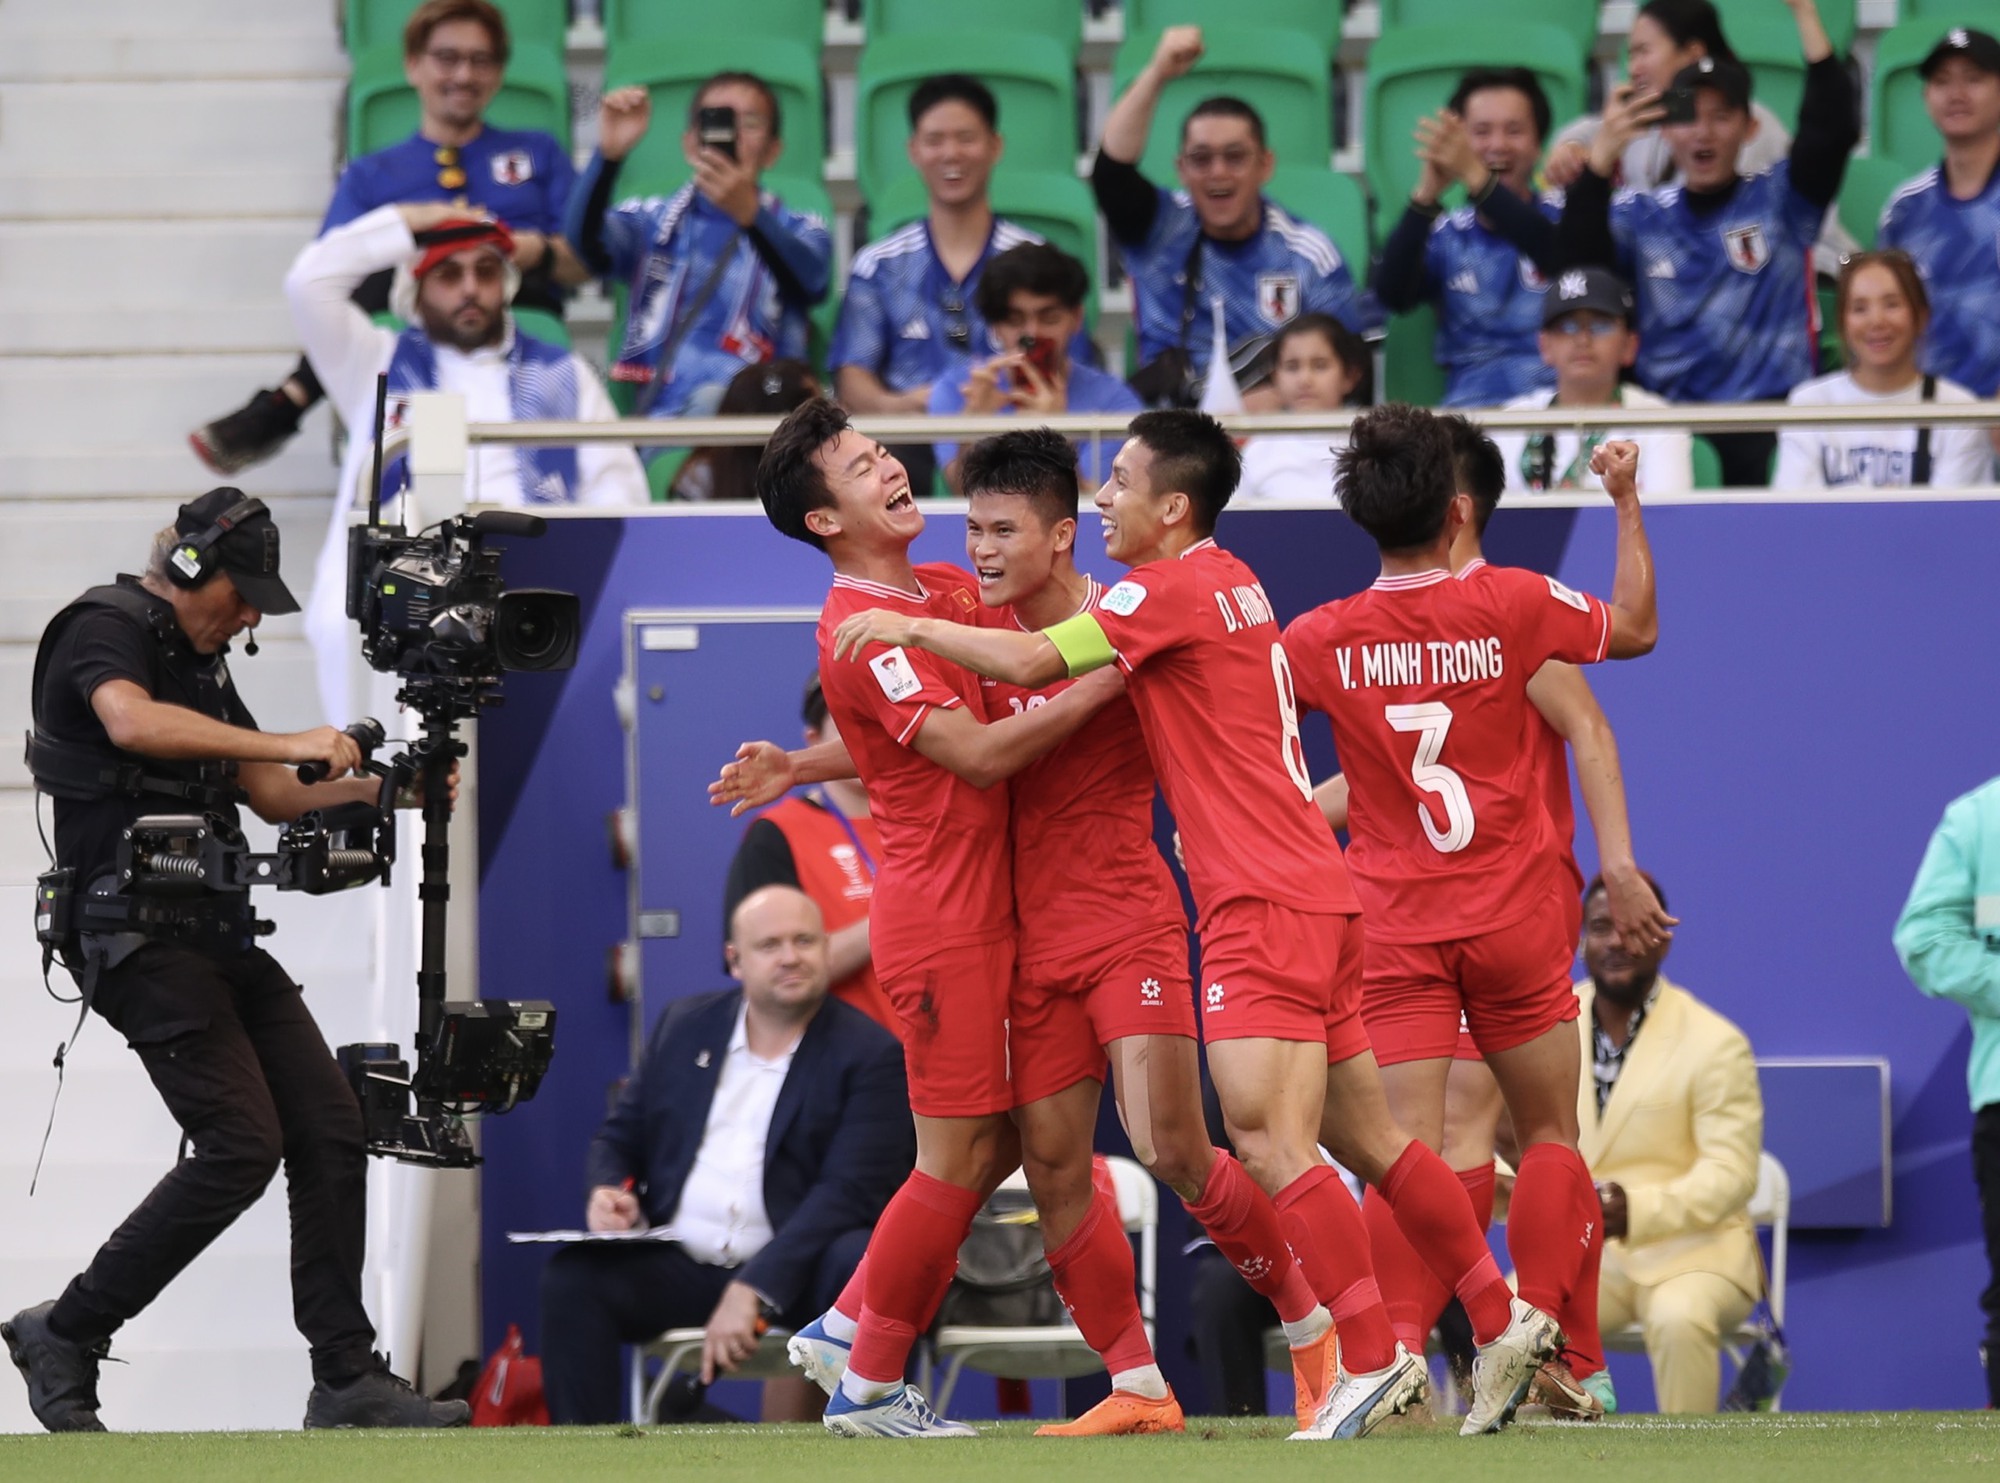 Thấy gì từ trận đội tuyển Việt Nam thua Nhật Bản: Vượt bão hoài nghi, ươm mầm hy vọng - Ảnh 1.